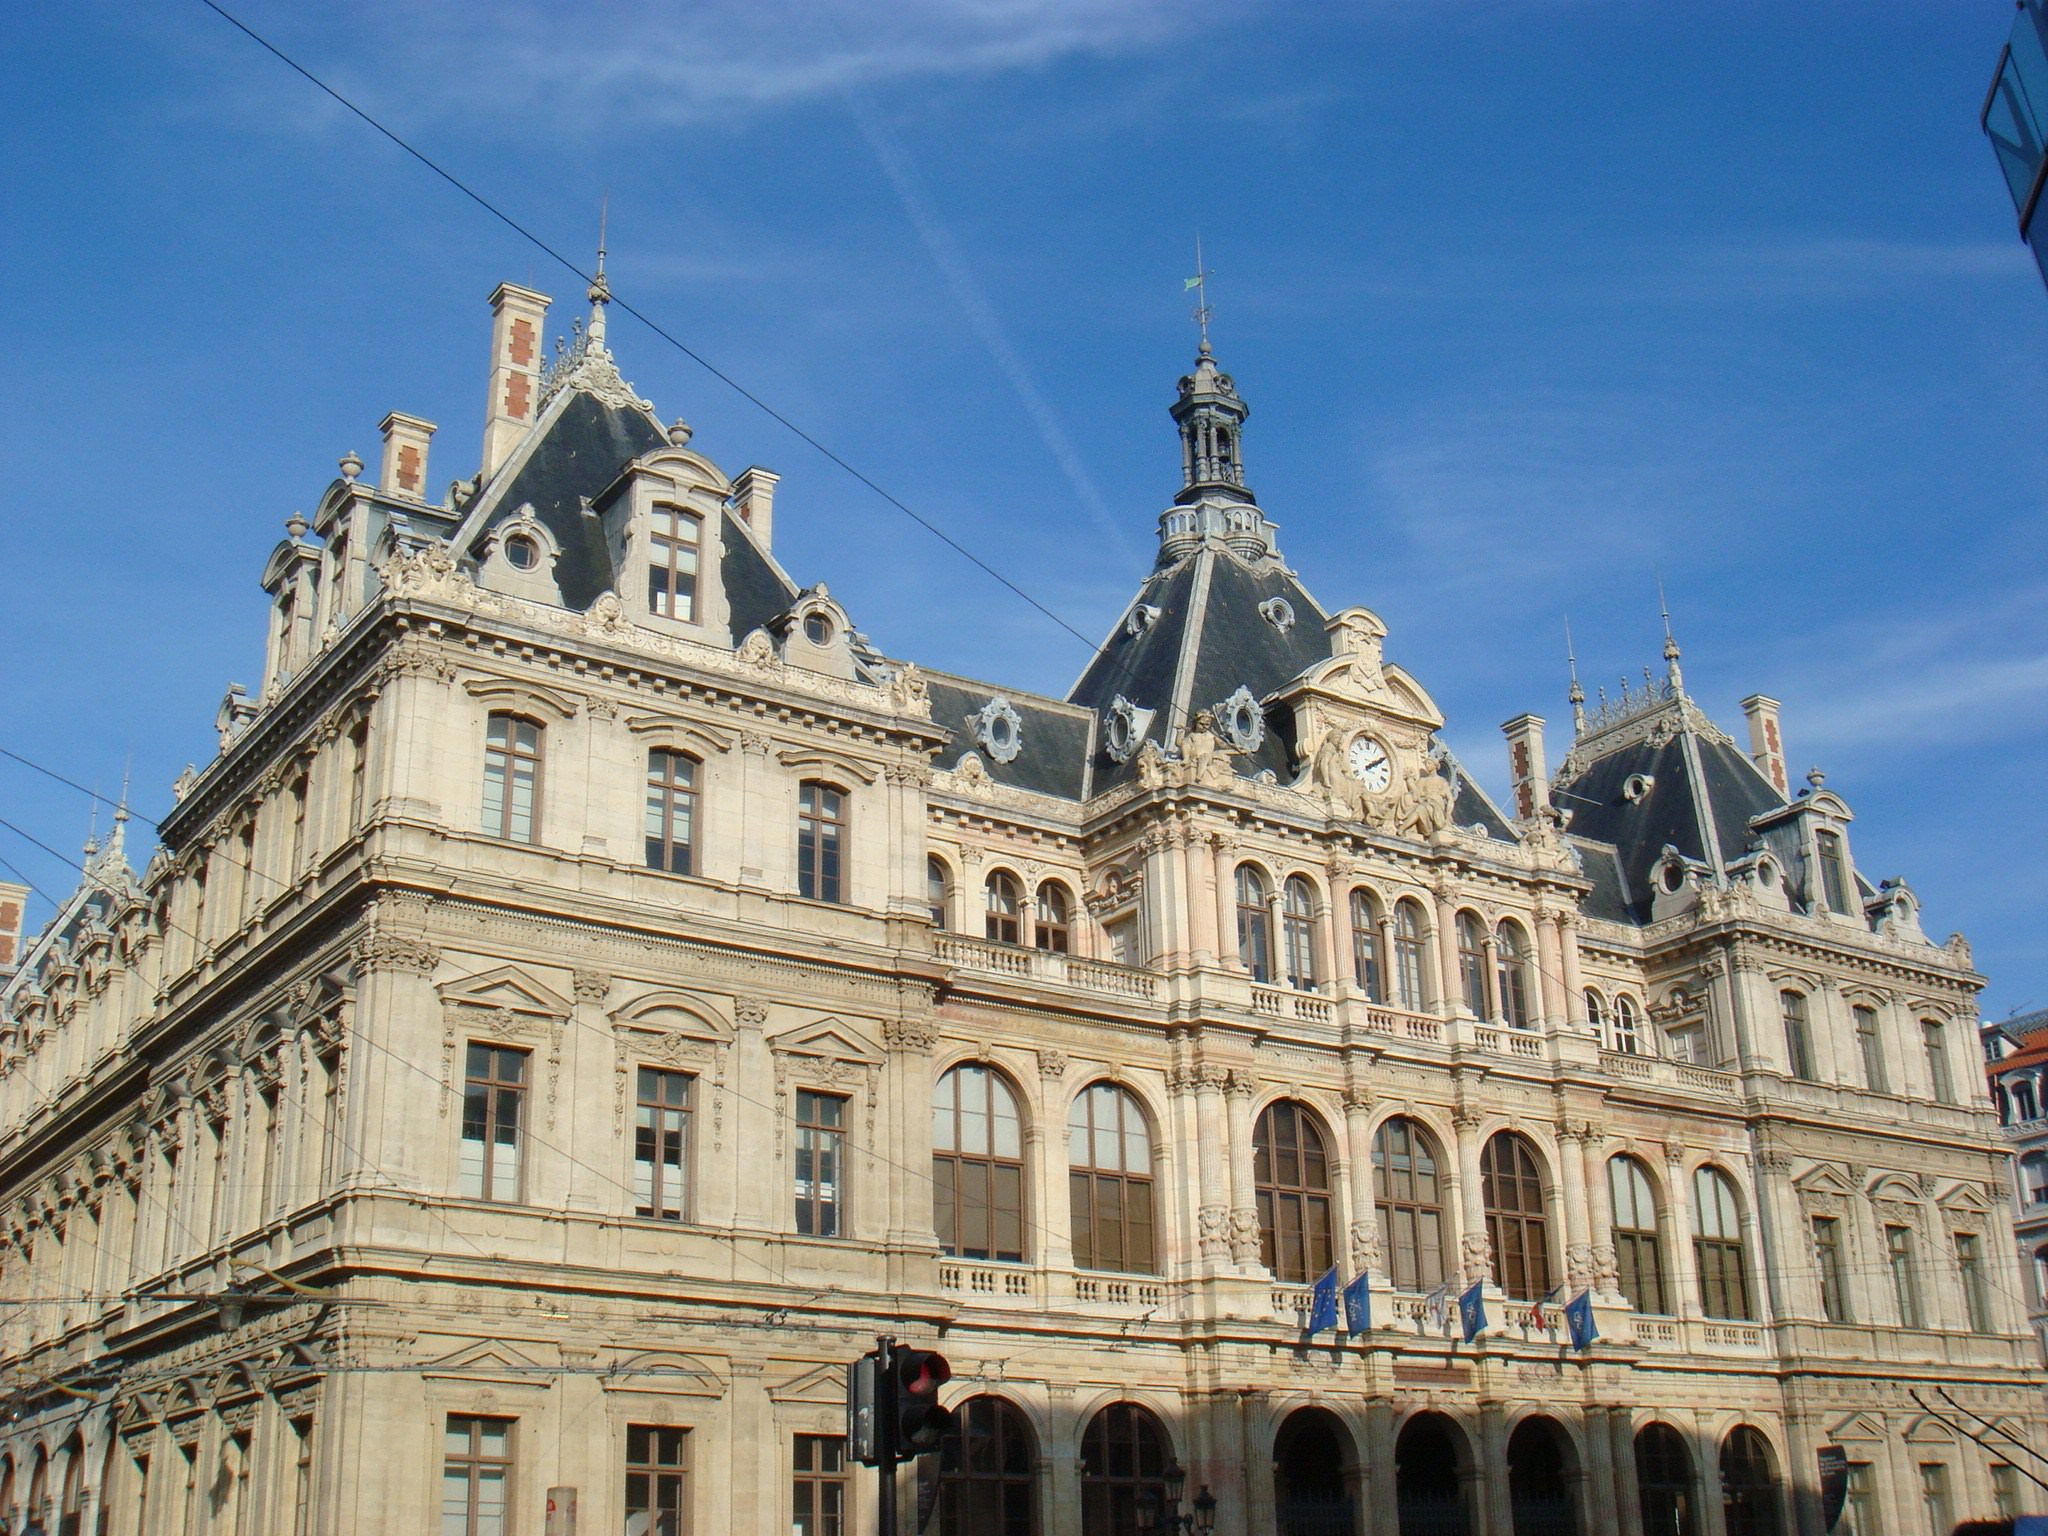 Edifices Palais du commerce.